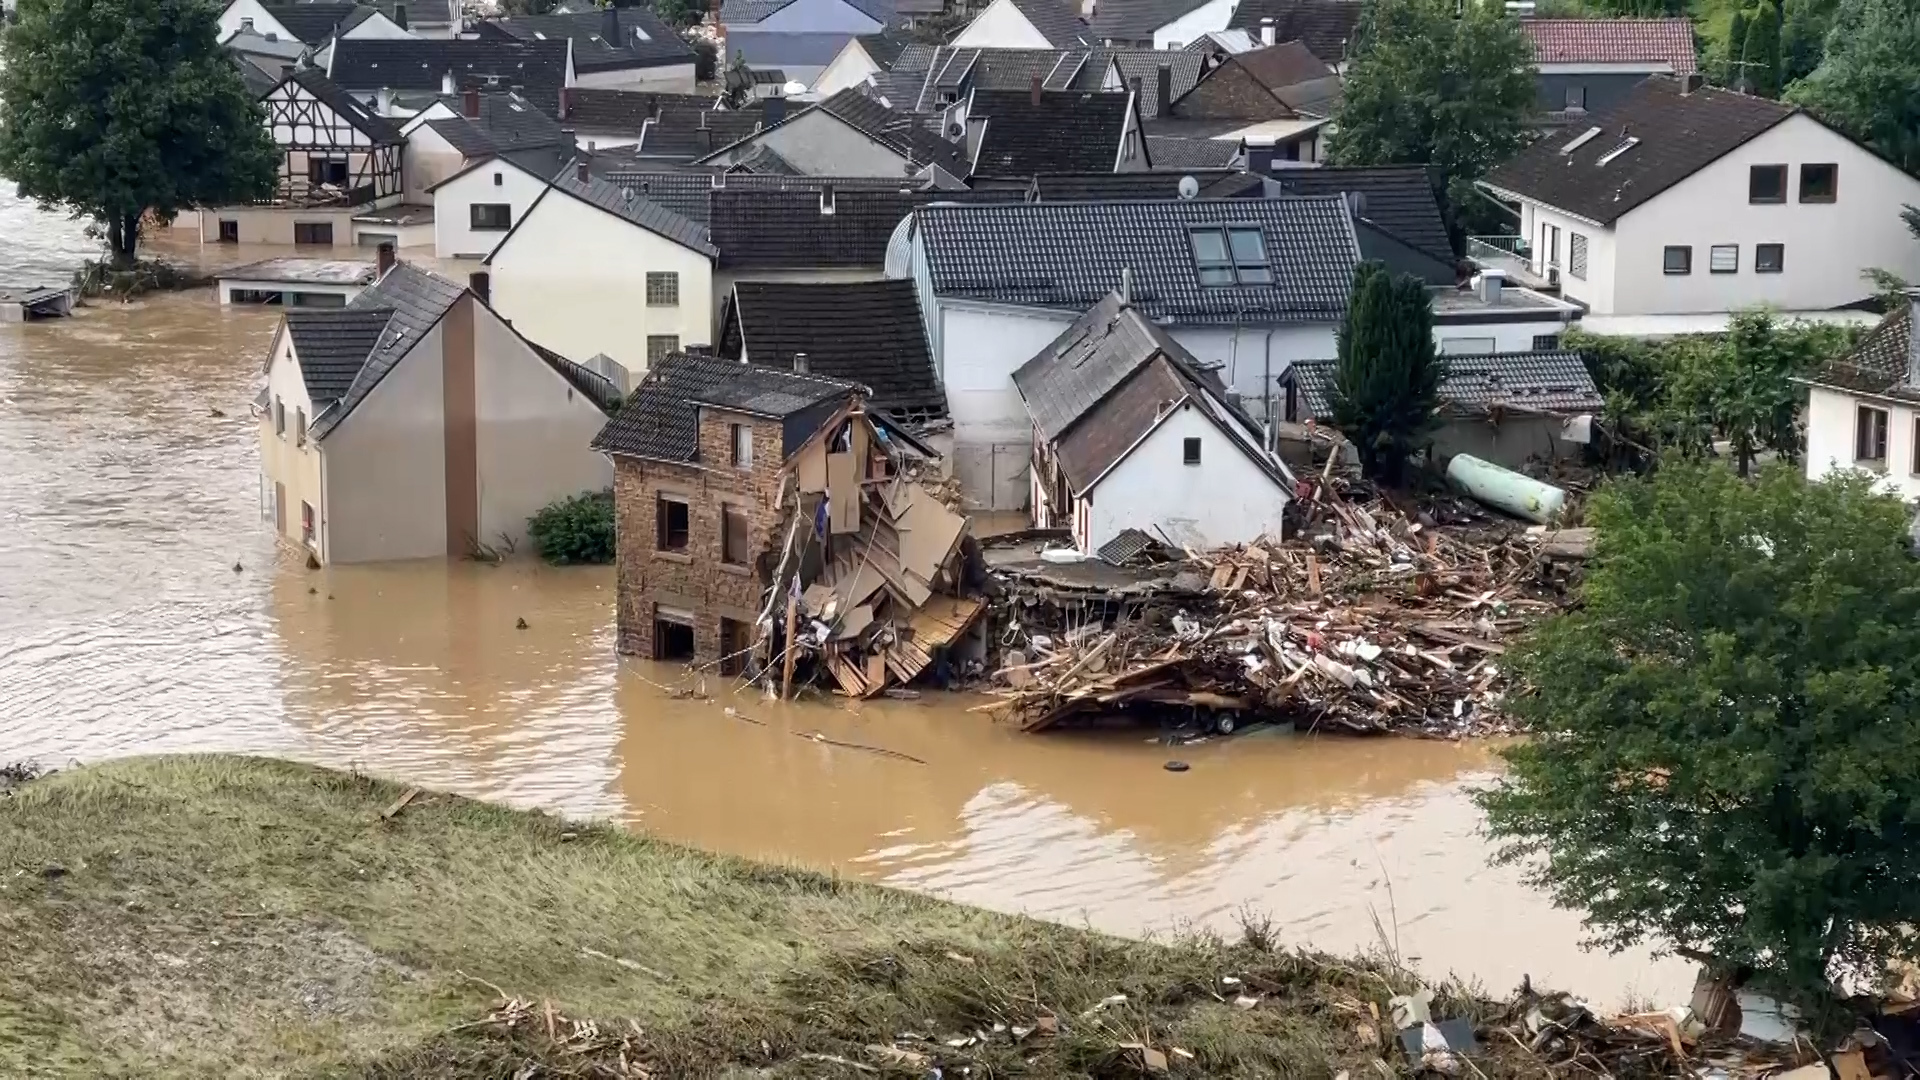 Luftaufnahme des überfluteten Ortsteils Altenburg